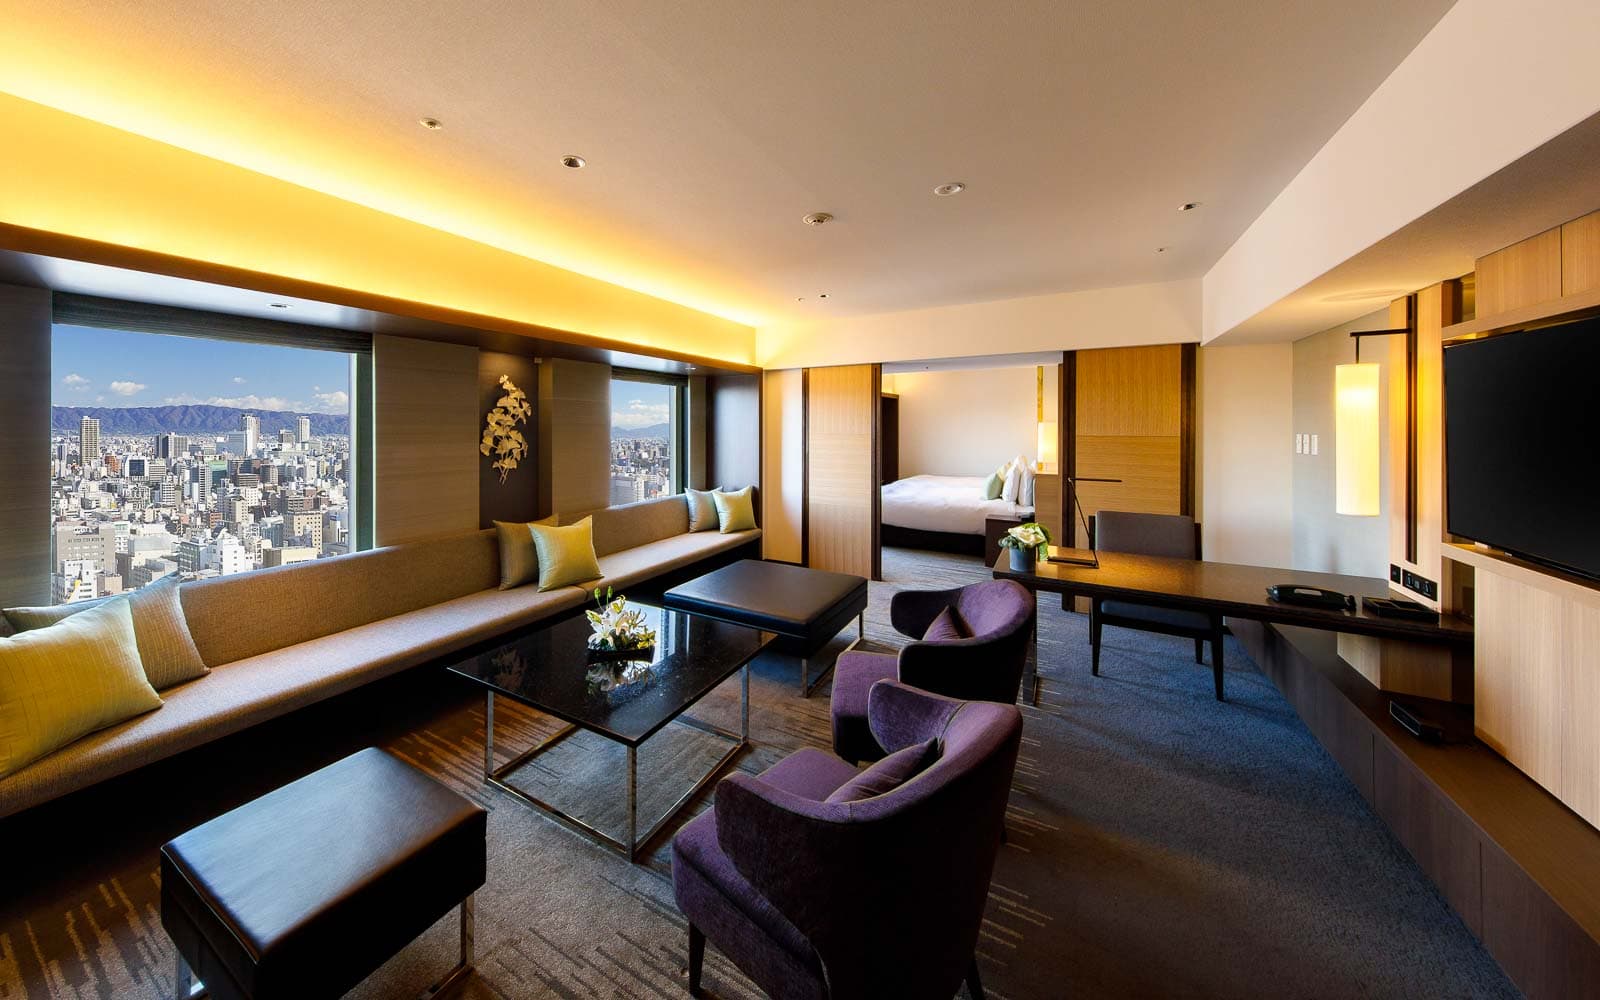 ニッコーエグゼクティブスイート リビングルーム / Nikko Executive Suite Living Room